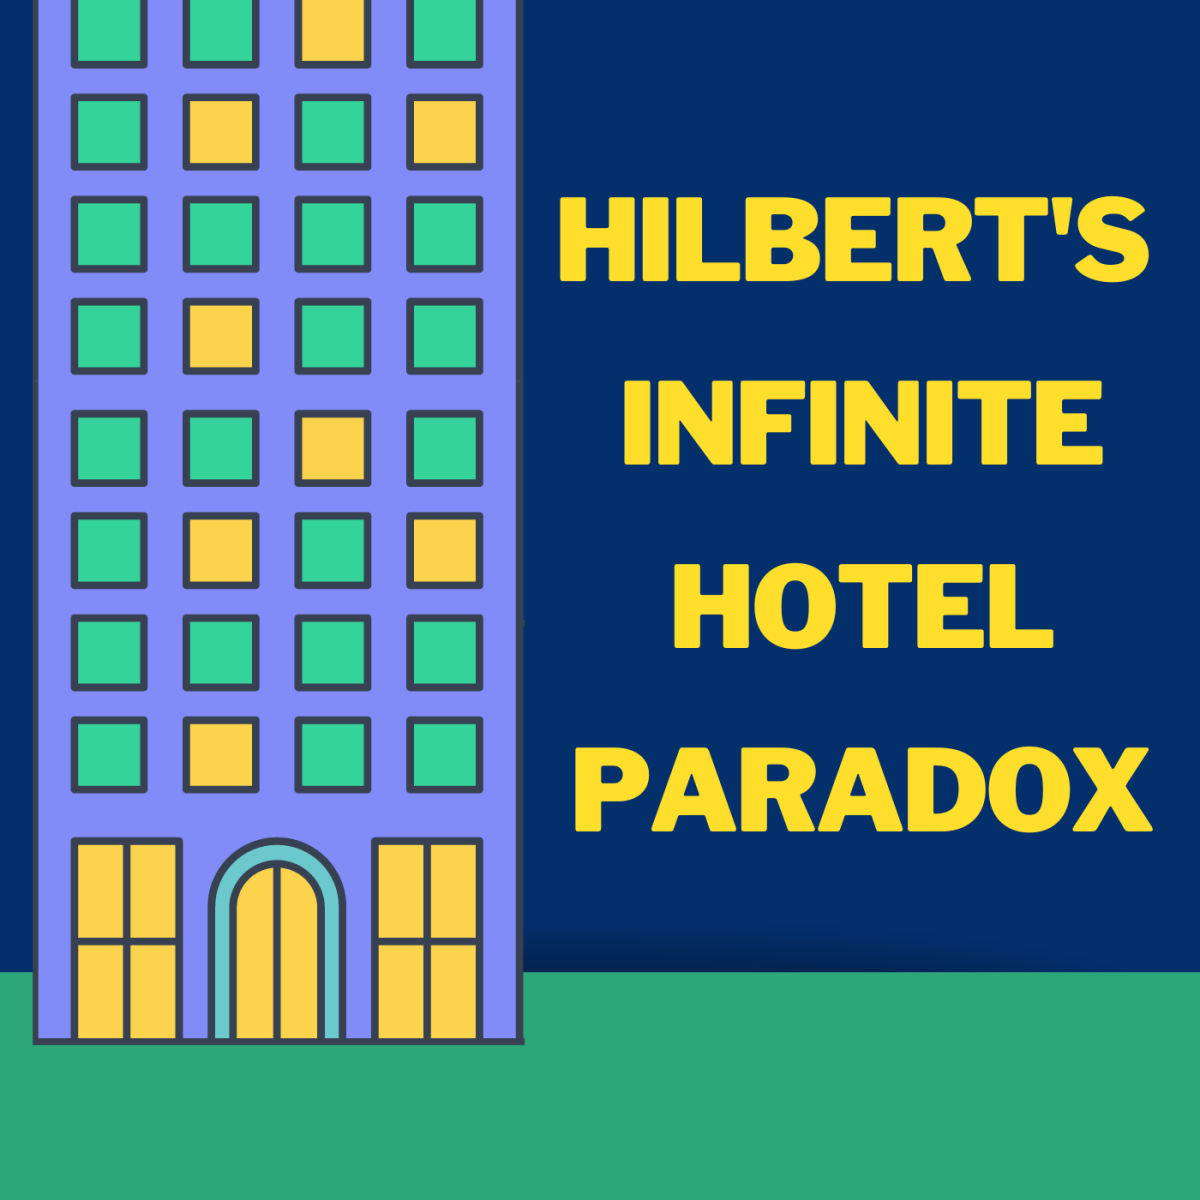 Hilbert's infinite hotel paradox